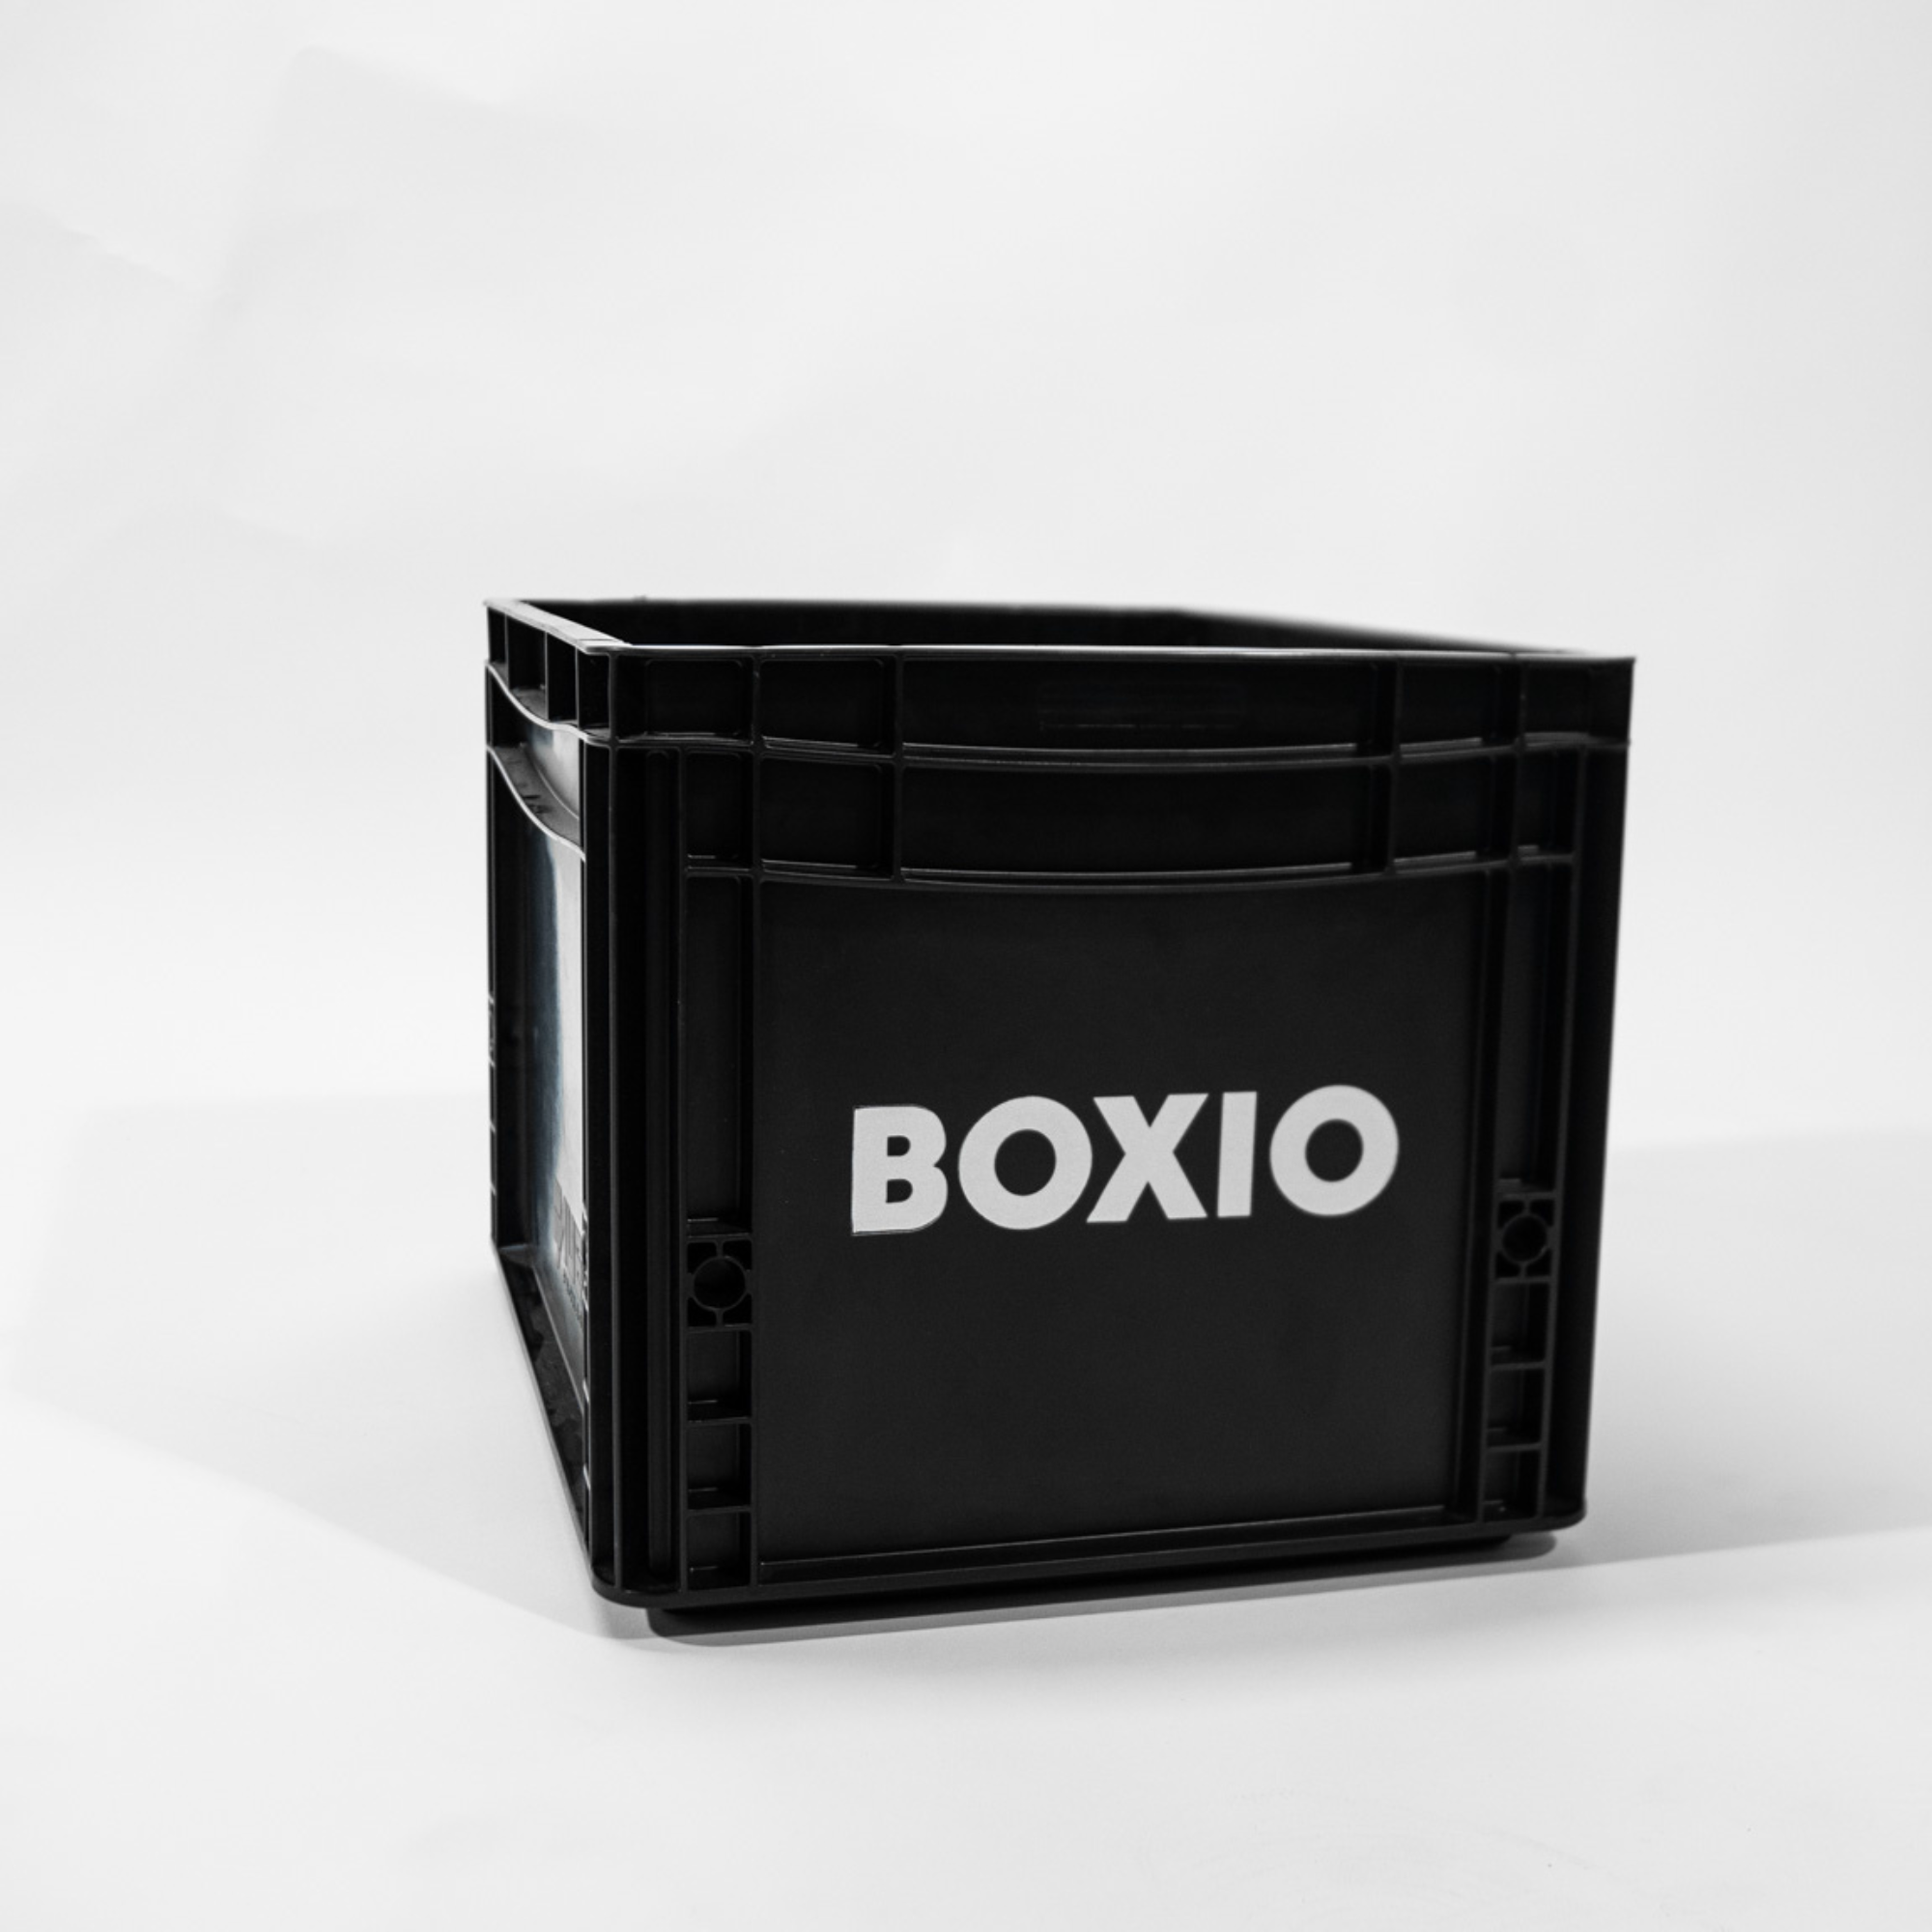 Eurobox "BOXIO" avec trous de perçage pour BOXIO - TOILET